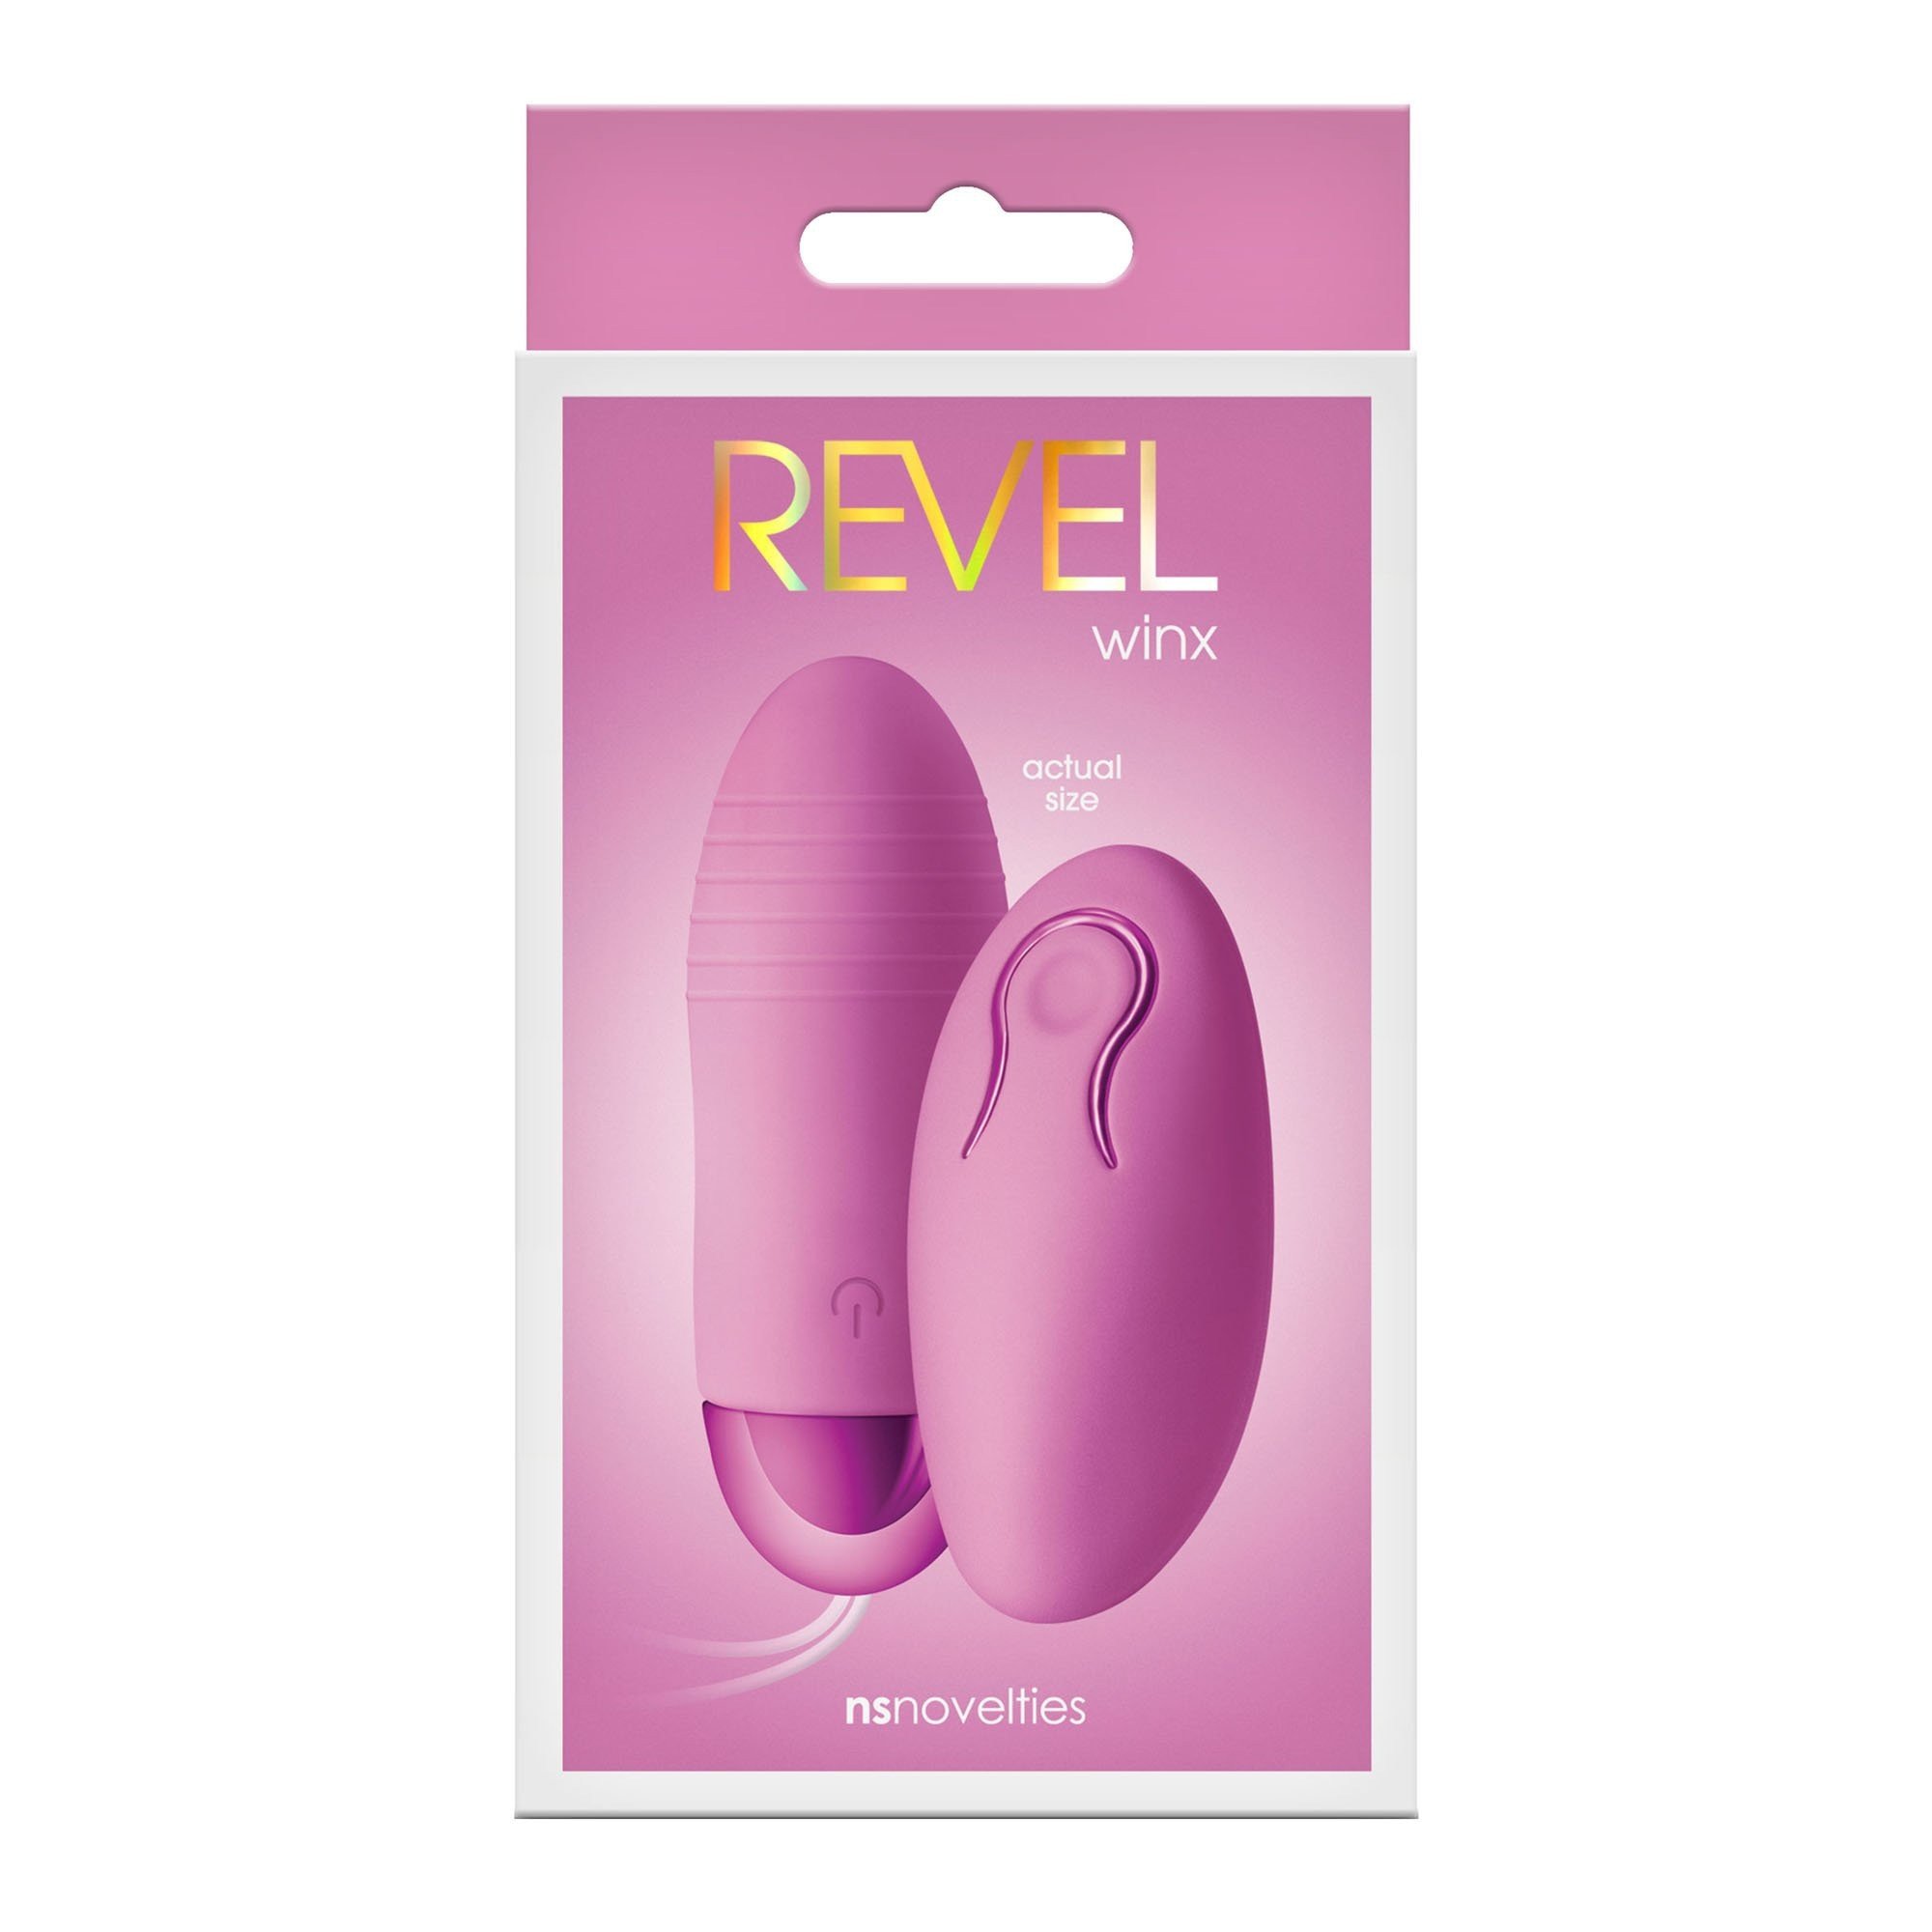 Vibruojantis kiaušinėlis „Revel Winx“ - NS Novelties